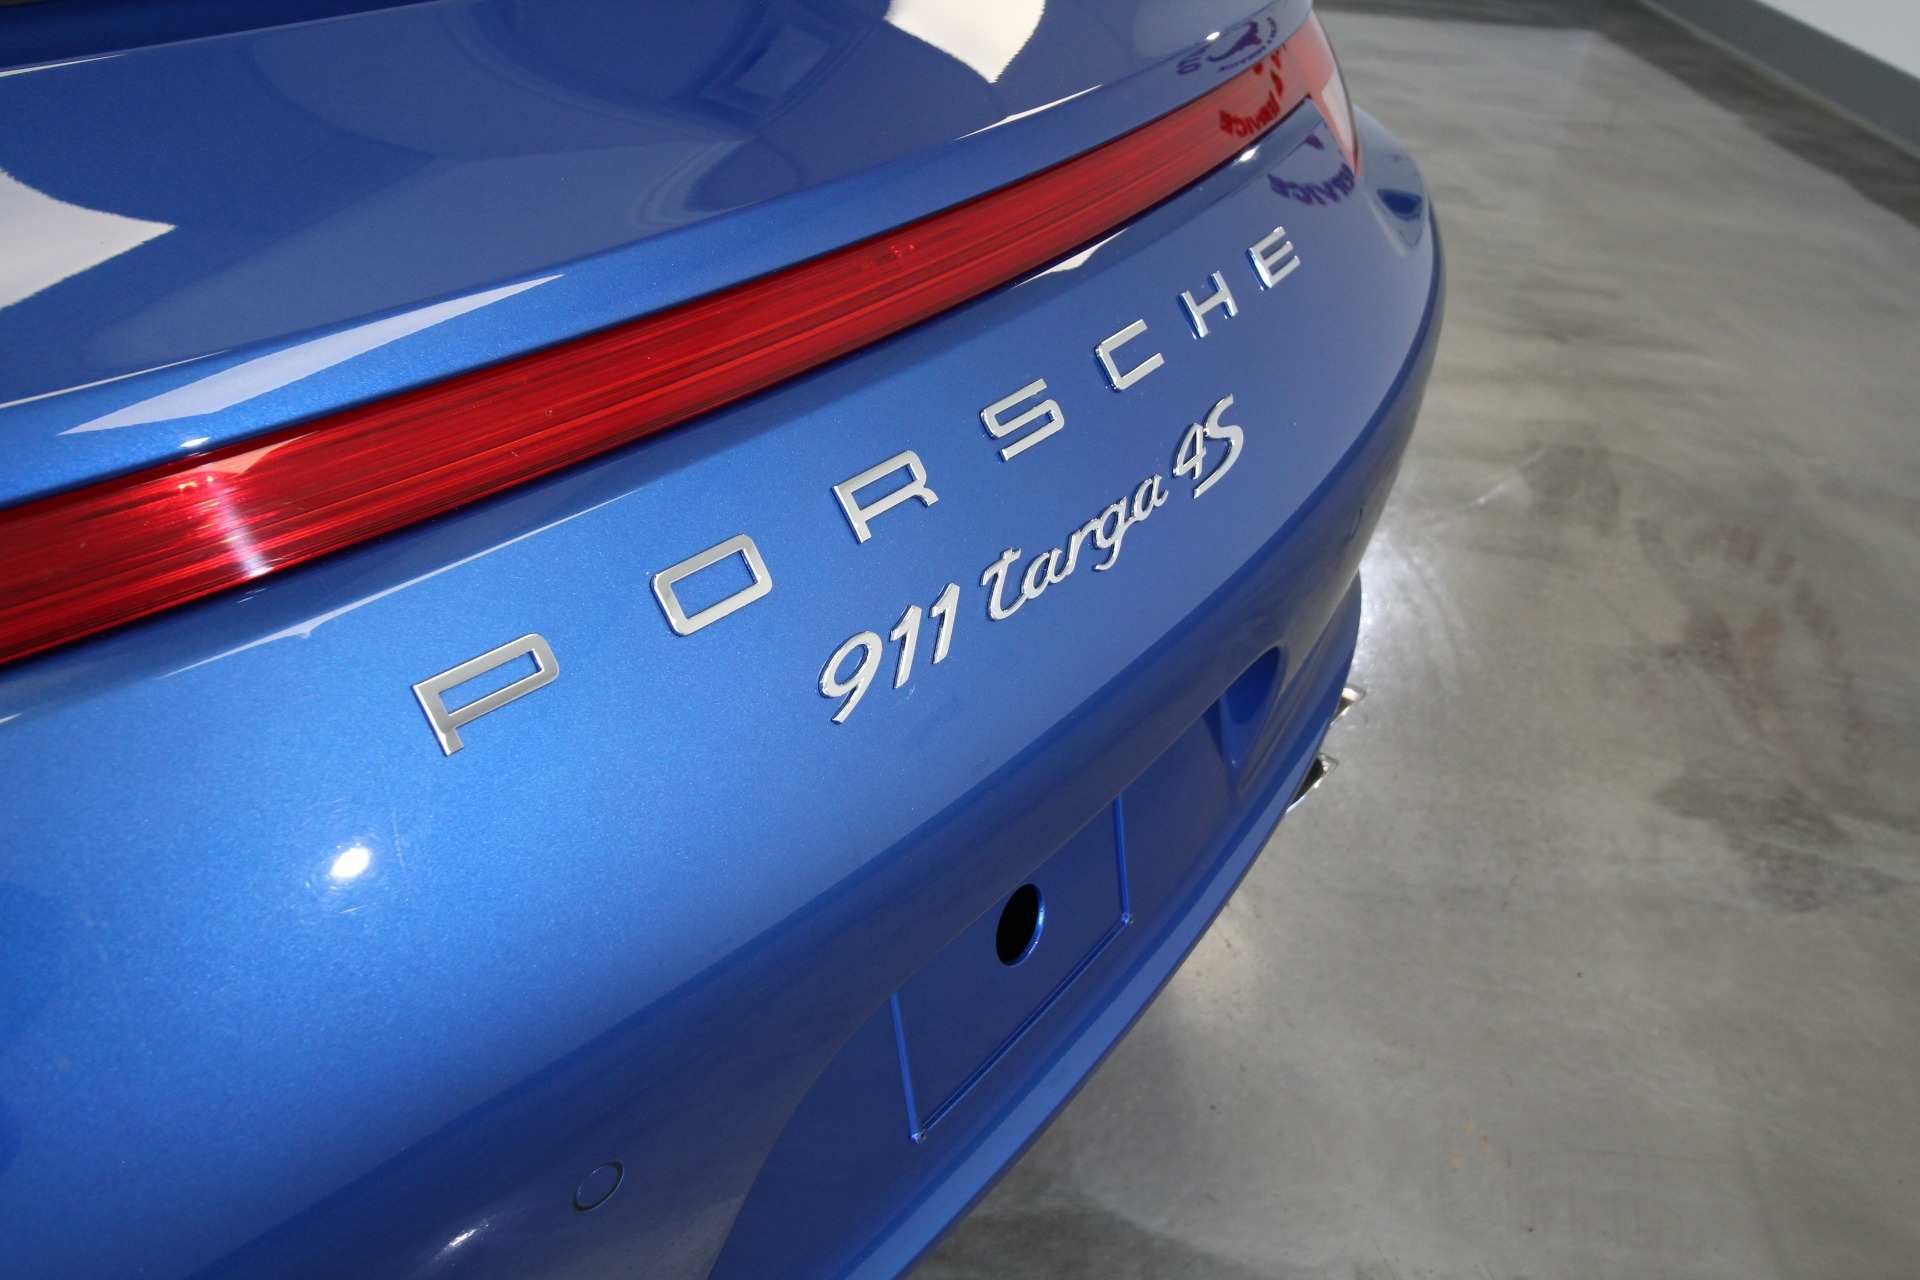 Used 2015 Blue Porsche 911 Targa 4S | Albany, NY